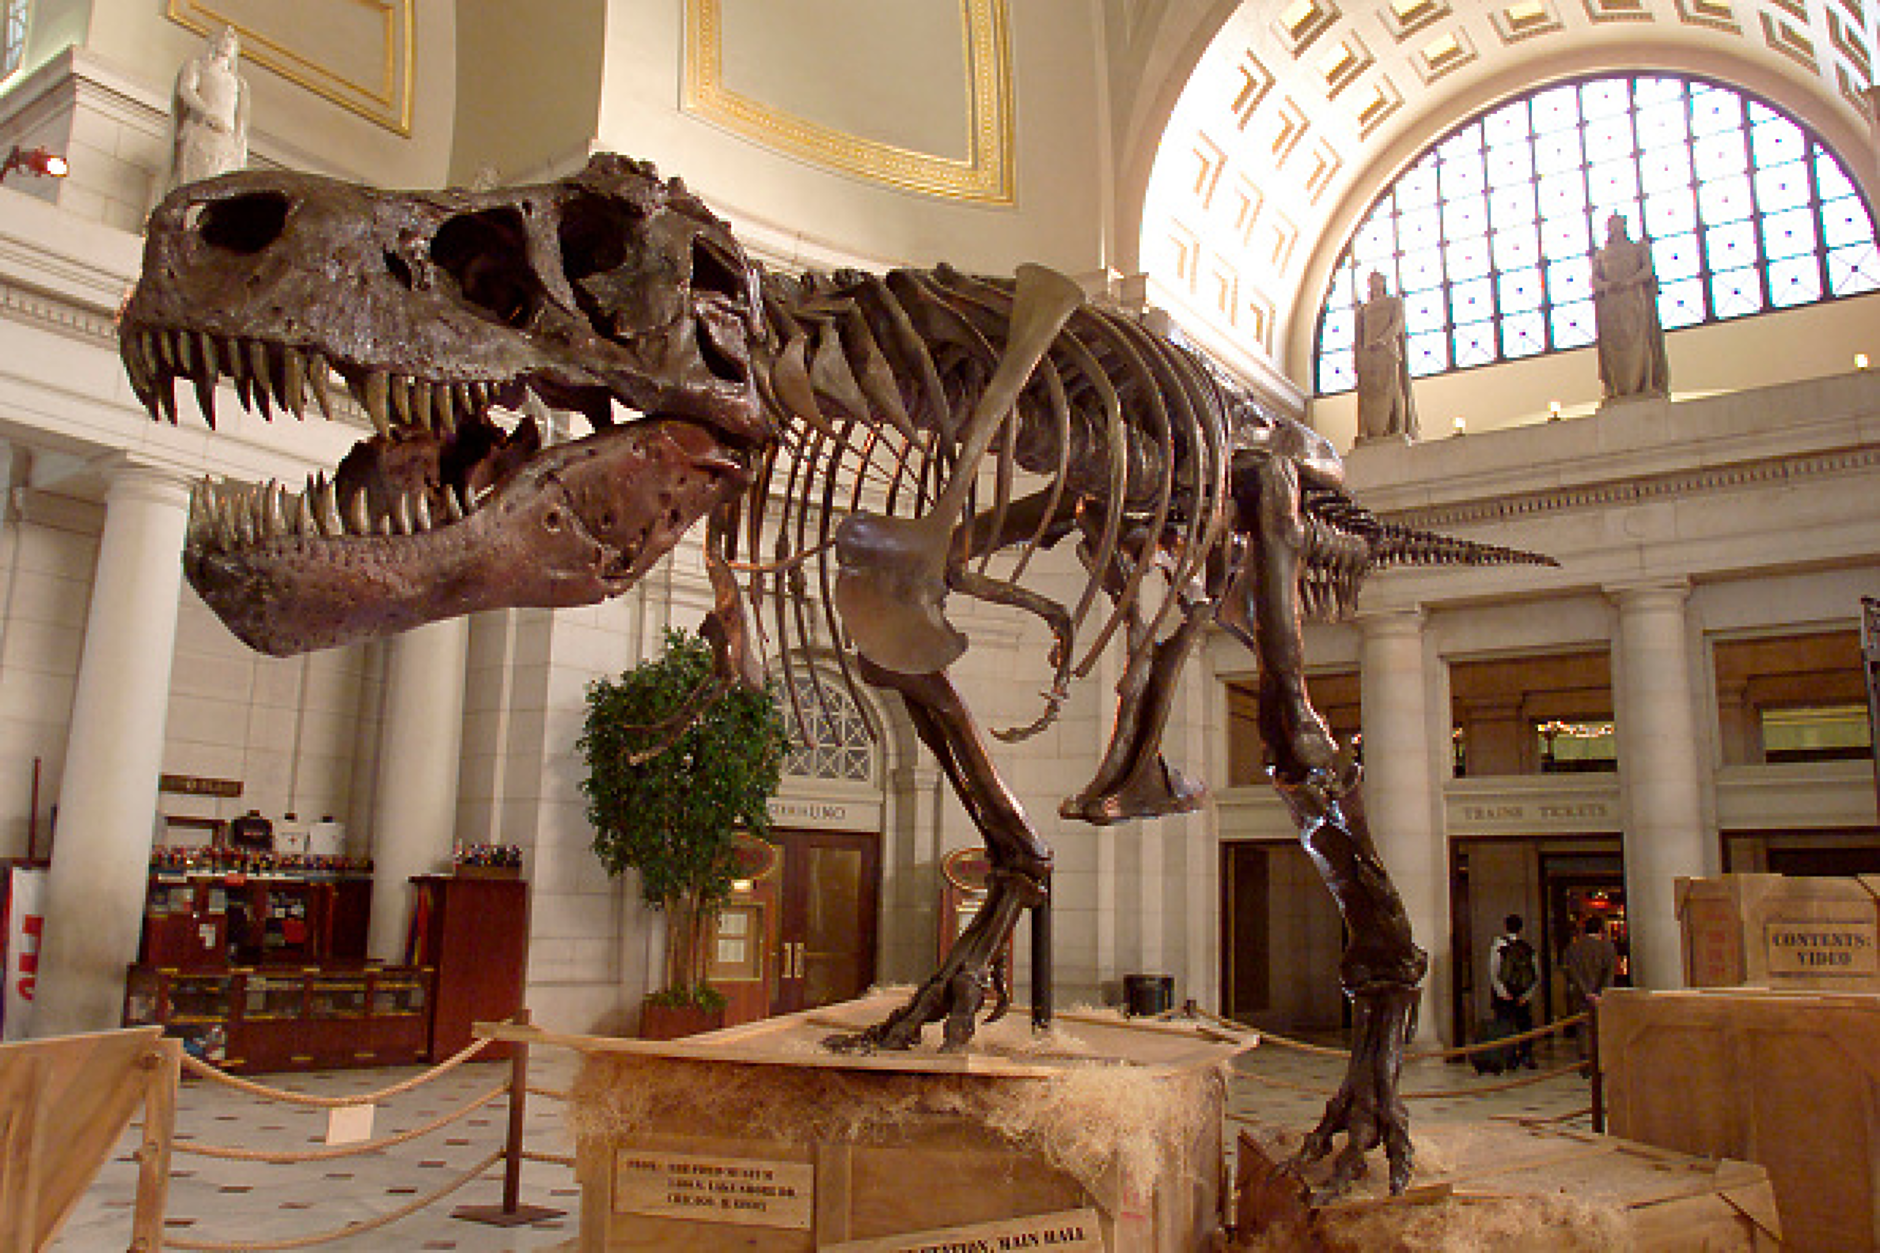 Продадоха скелет на динозавър за рекордните 44,6 млн. долара на търг